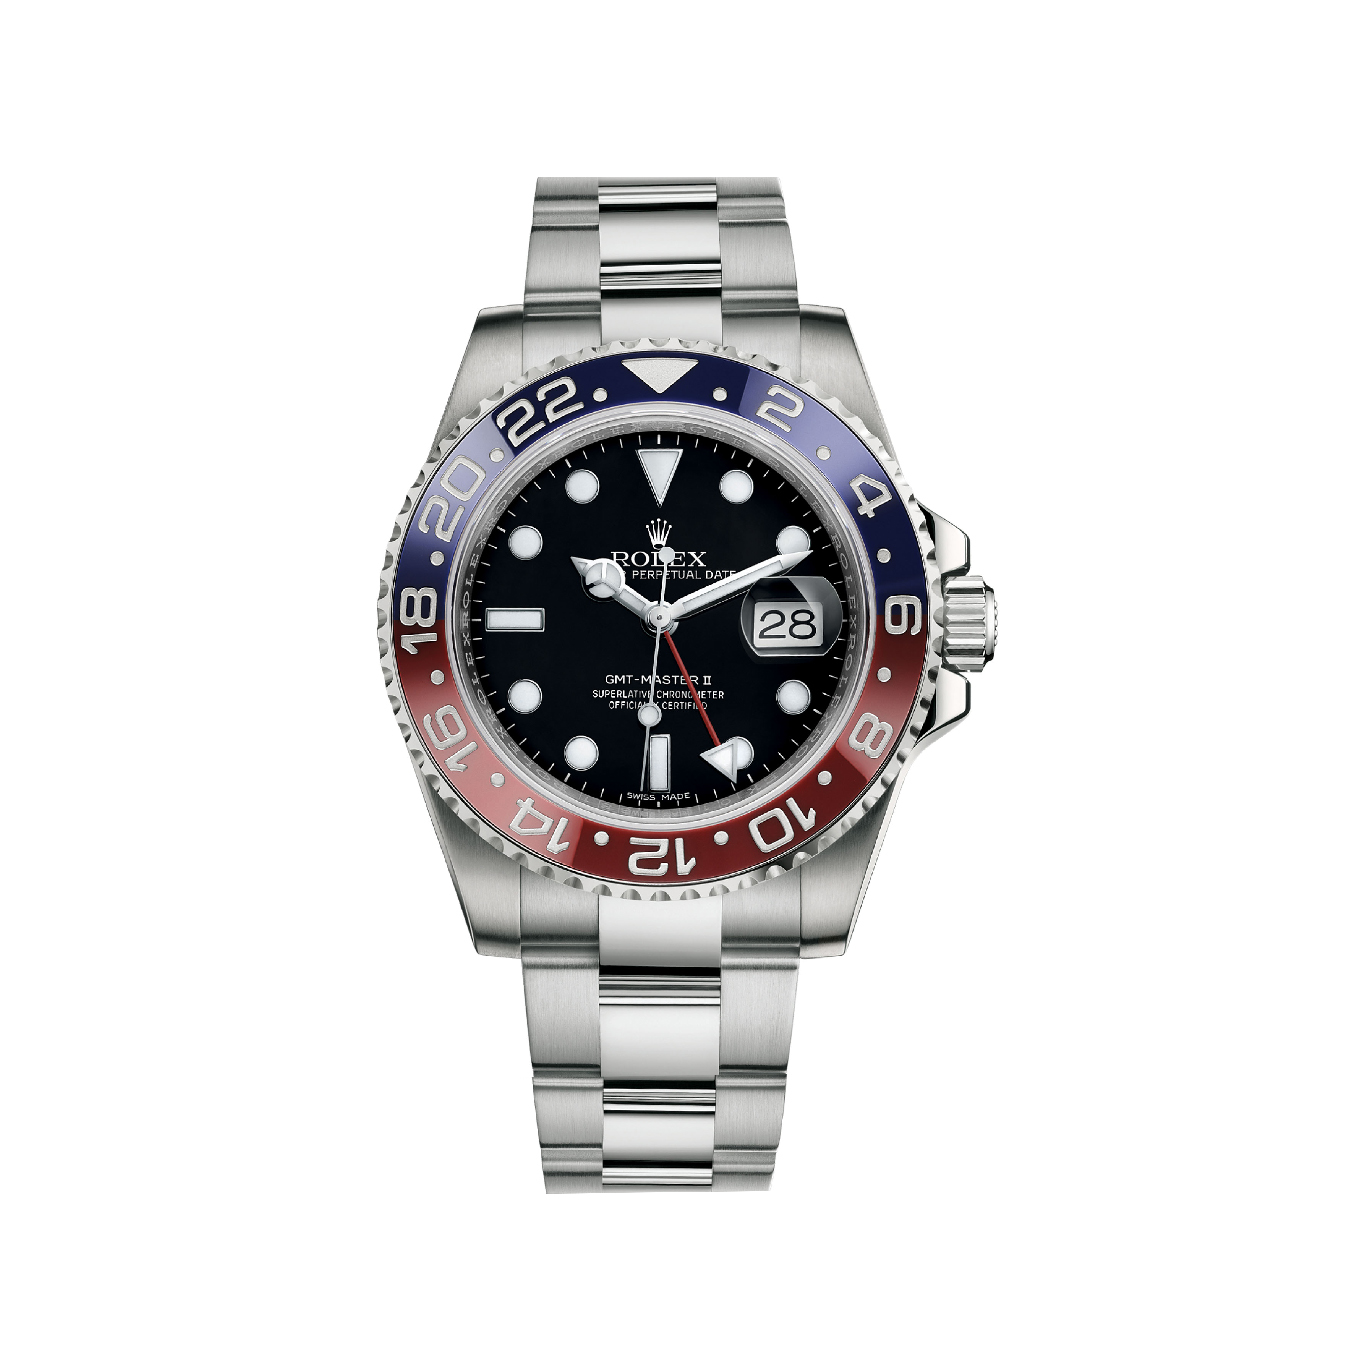 GMT-Master II 116719BLRO White Gold Watch (Black)